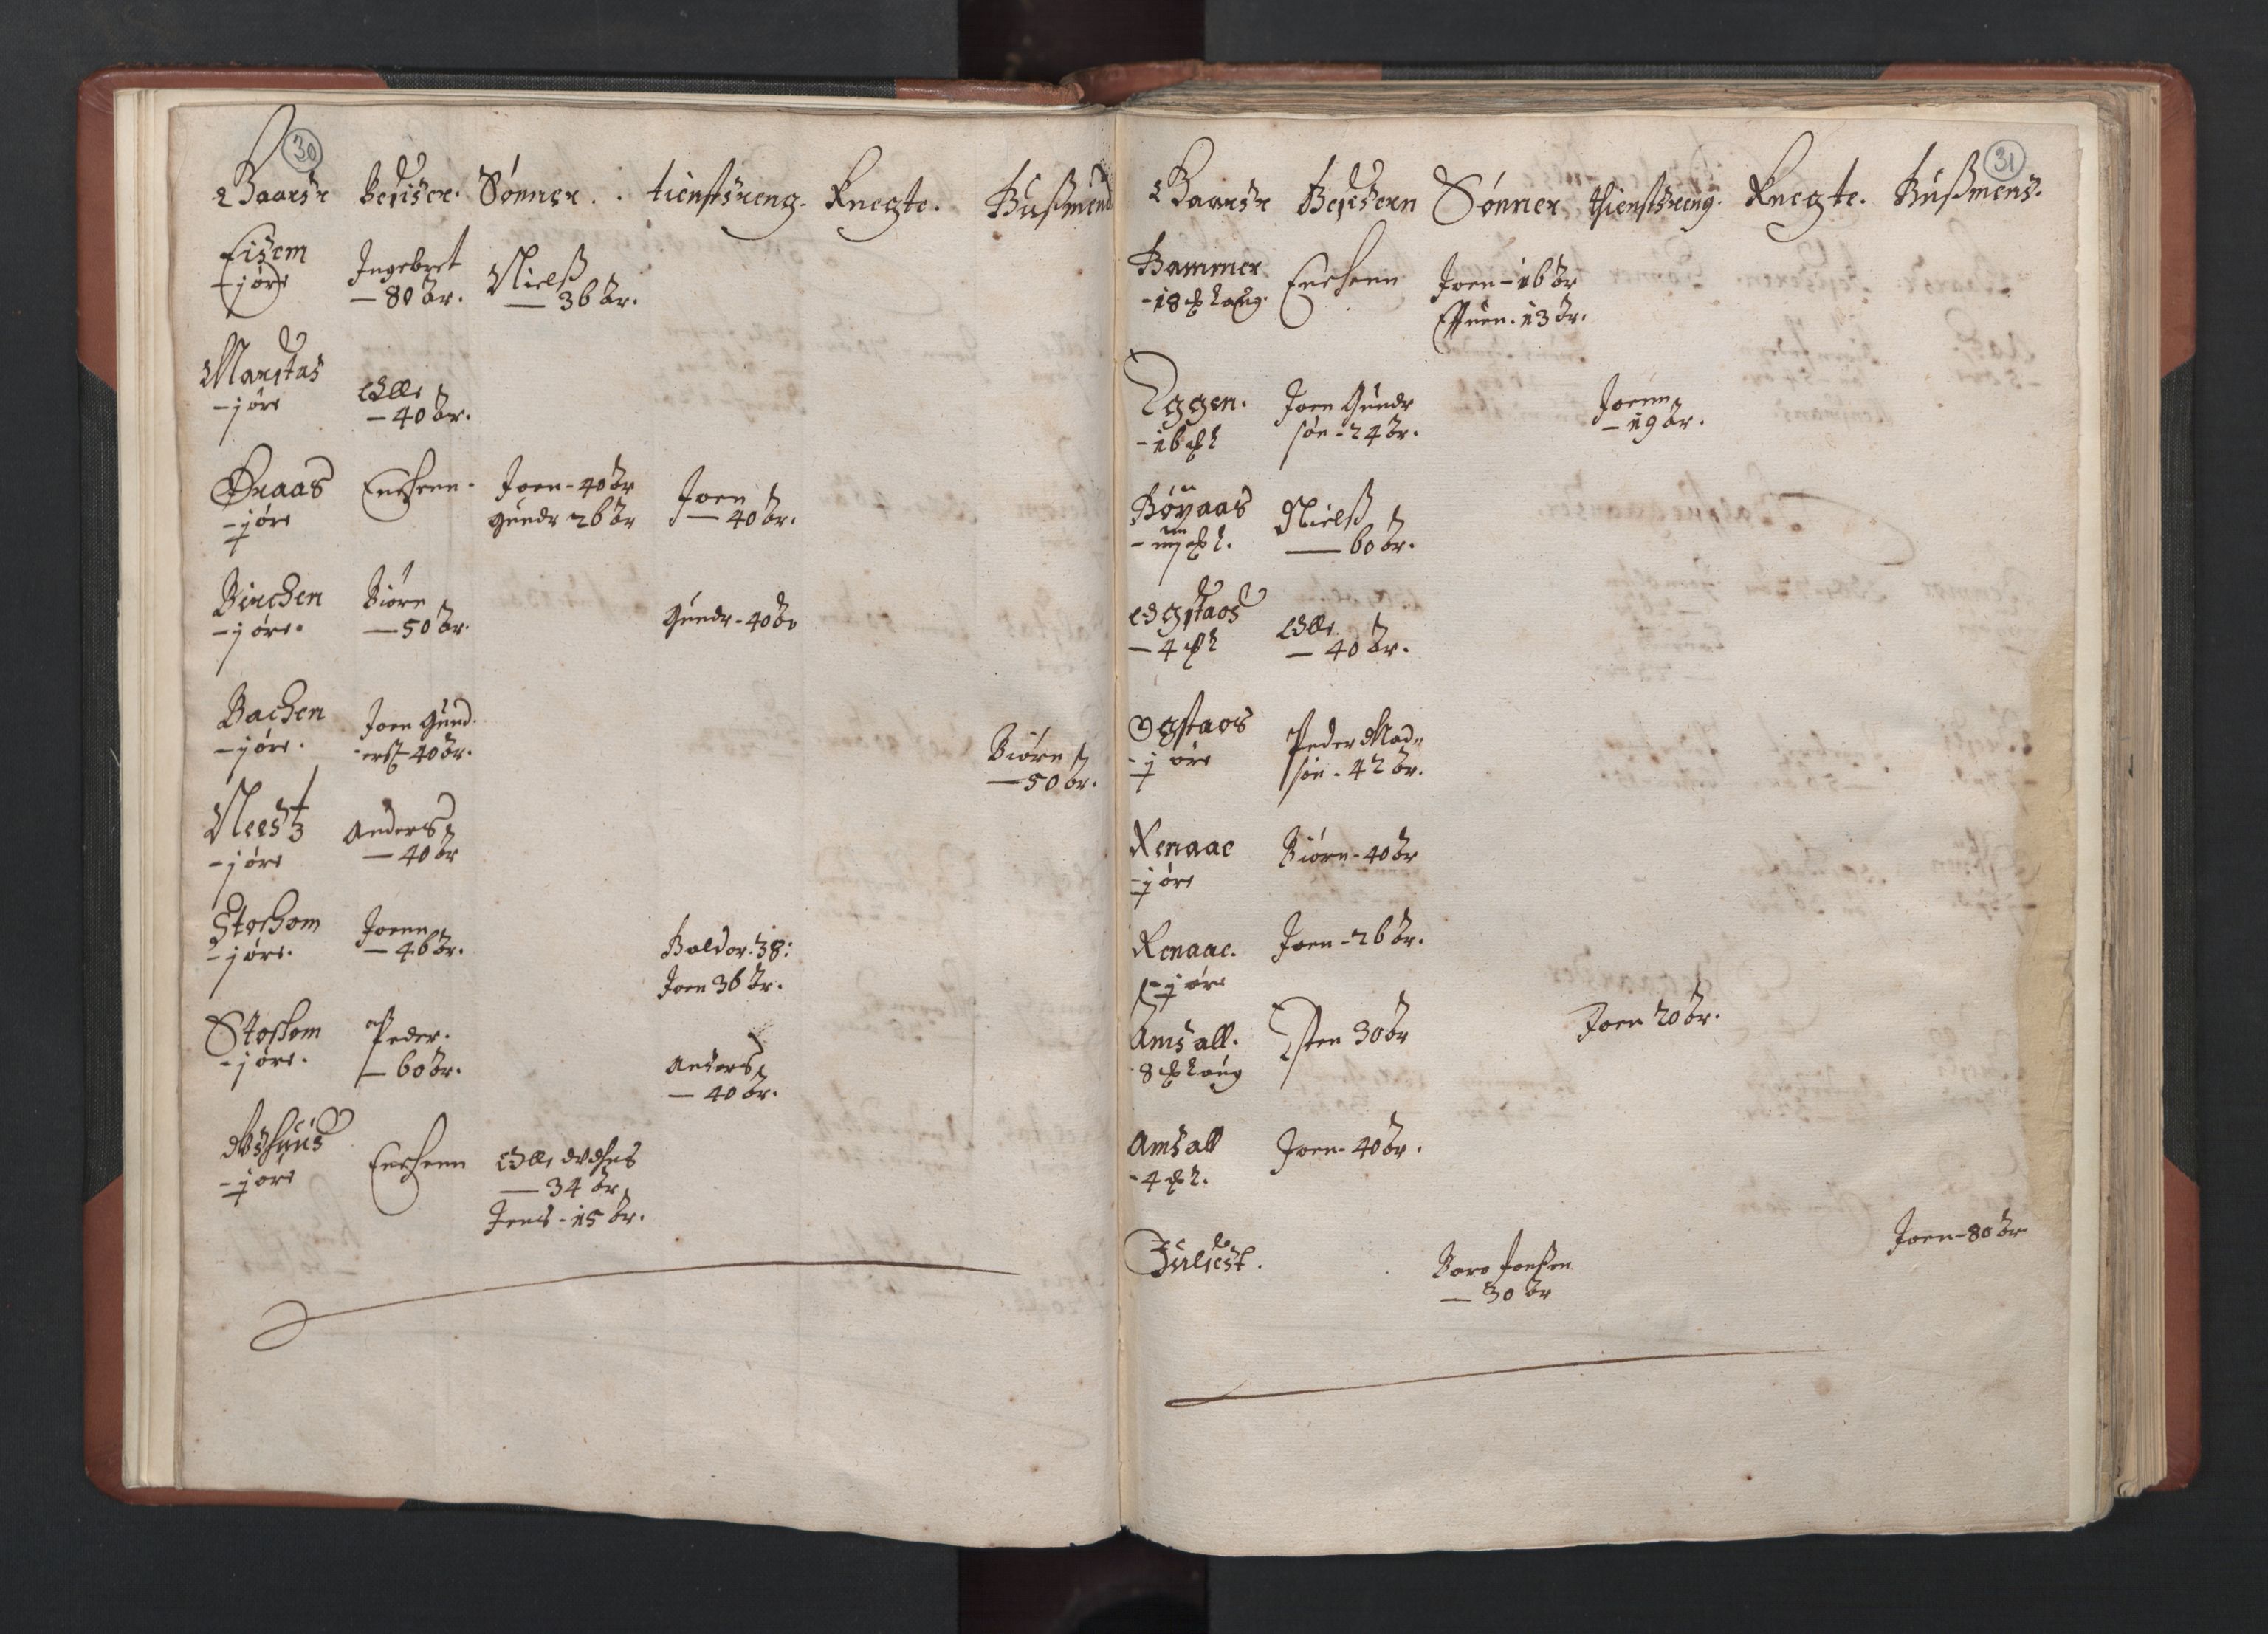 RA, Fogdenes og sorenskrivernes manntall 1664-1666, nr. 19: Fosen fogderi, Inderøy fogderi, Selbu fogderi, Namdal fogderi og Stjørdal fogderi, 1664-1665, s. 30-31